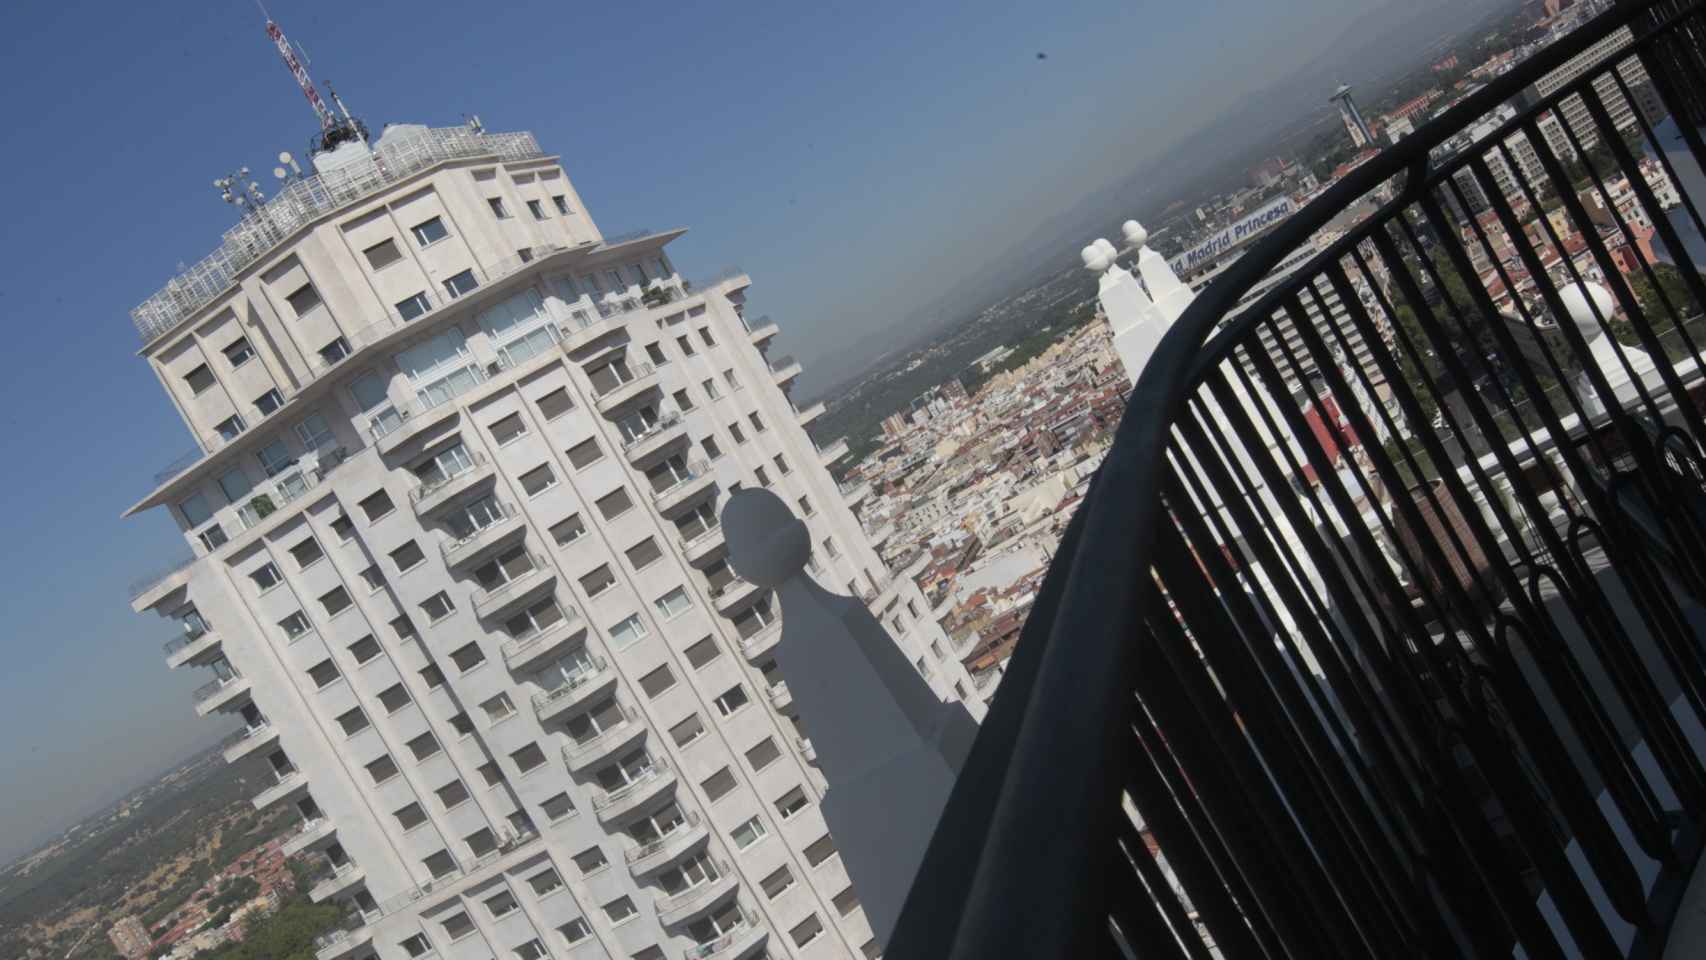 Imagen tomada en el ático del hotel RIU Plaza España.